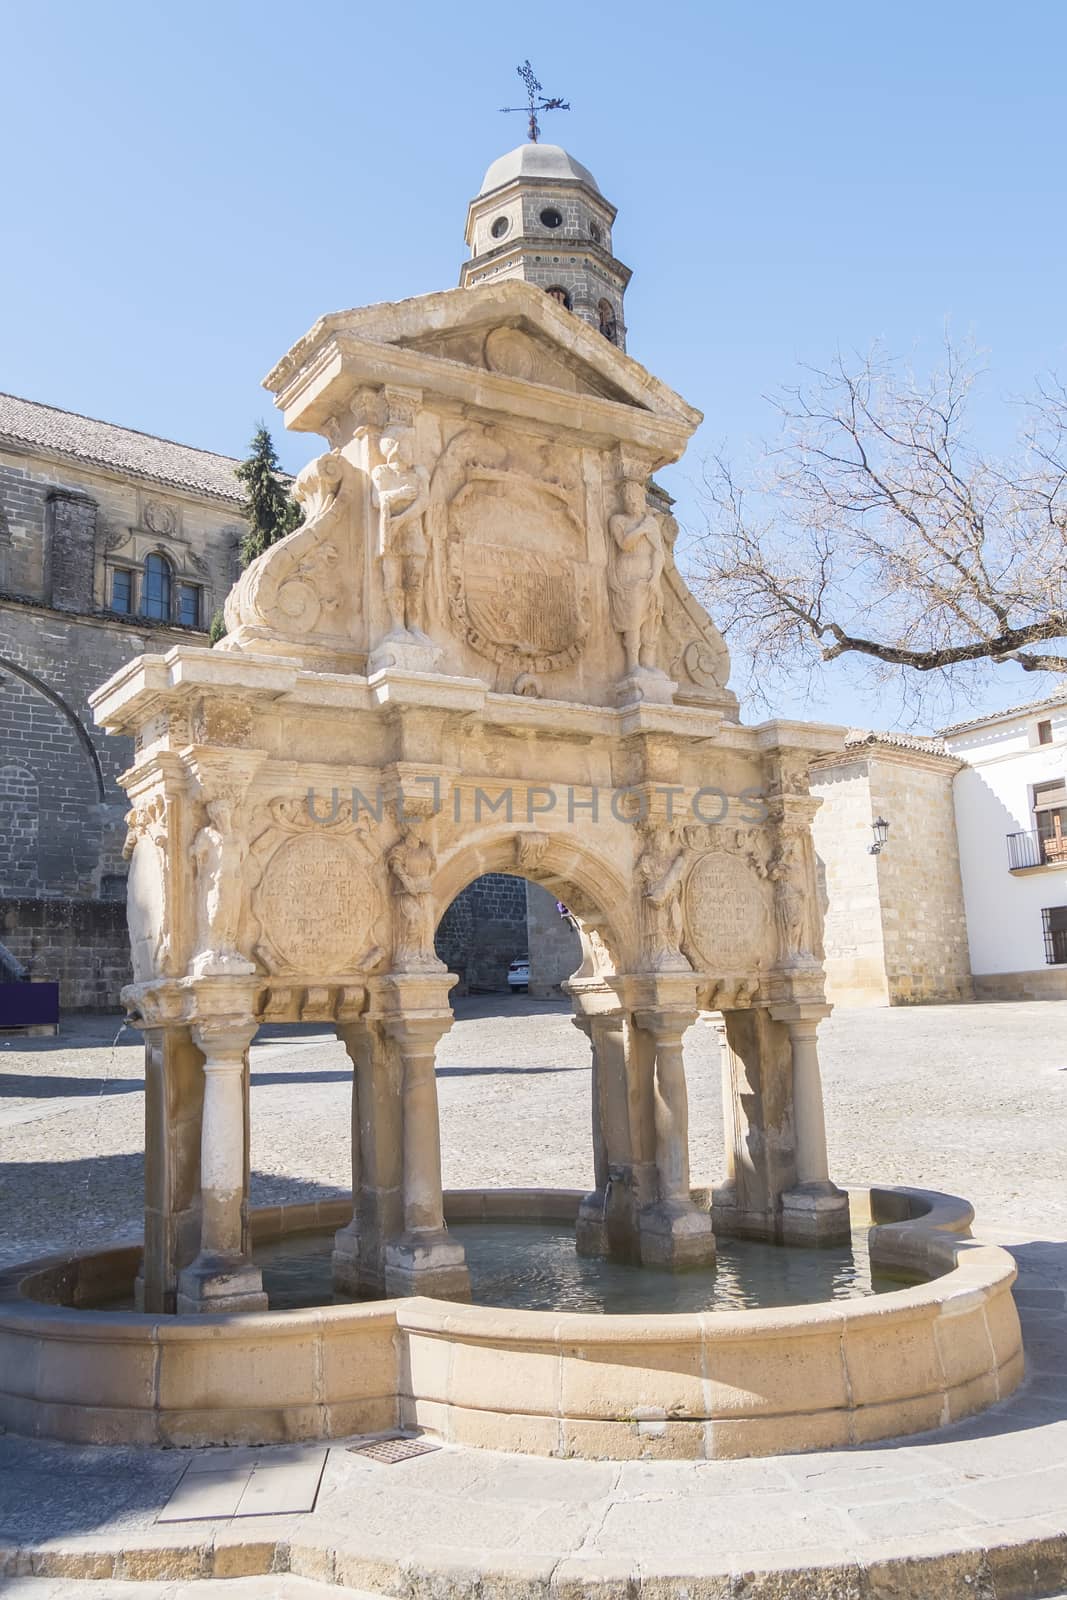 Santa Maria Fountain in Baeza, Jaen, Spain by max8xam